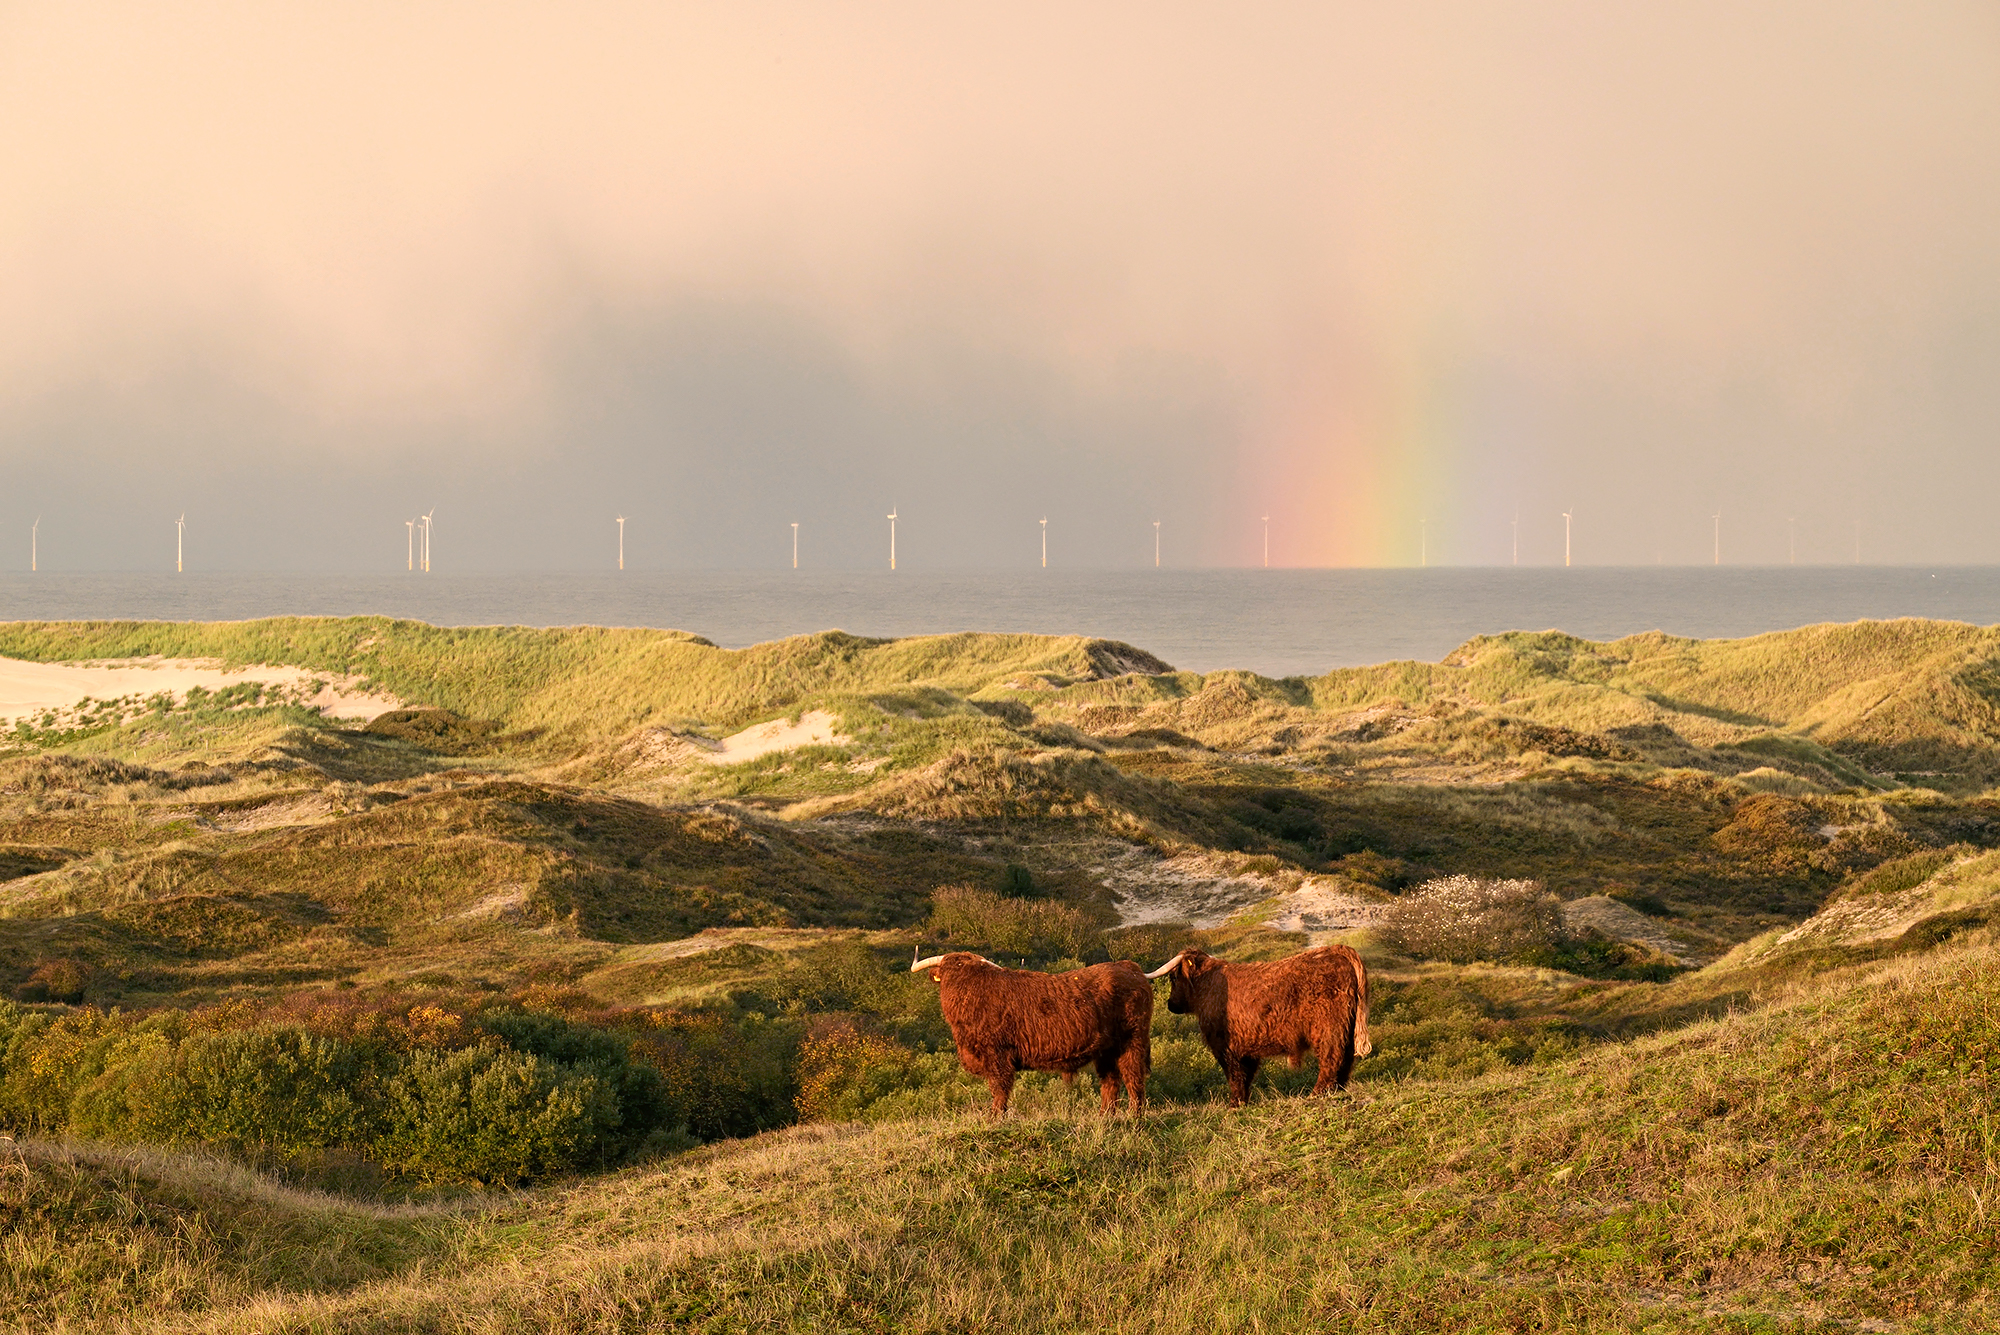 Schotse hooglanders op duintop met uitzicht op zee, regenboog en windmolens tijdens zonsopkomst in Noordhollands Duinreservaat bij Egmond.